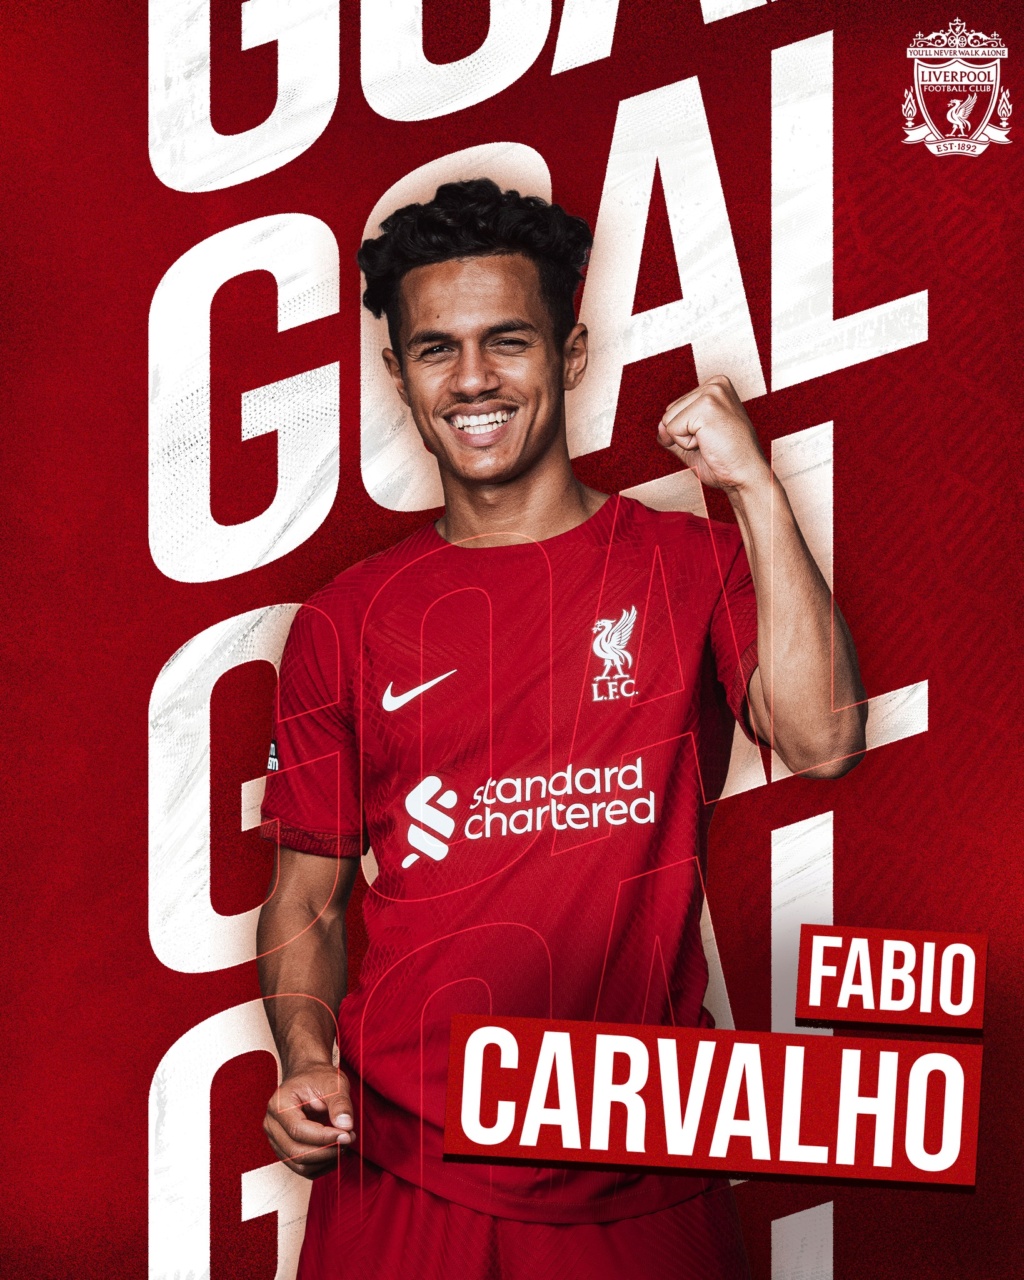 28 Fabio Carvalho - Seite 2 12-510